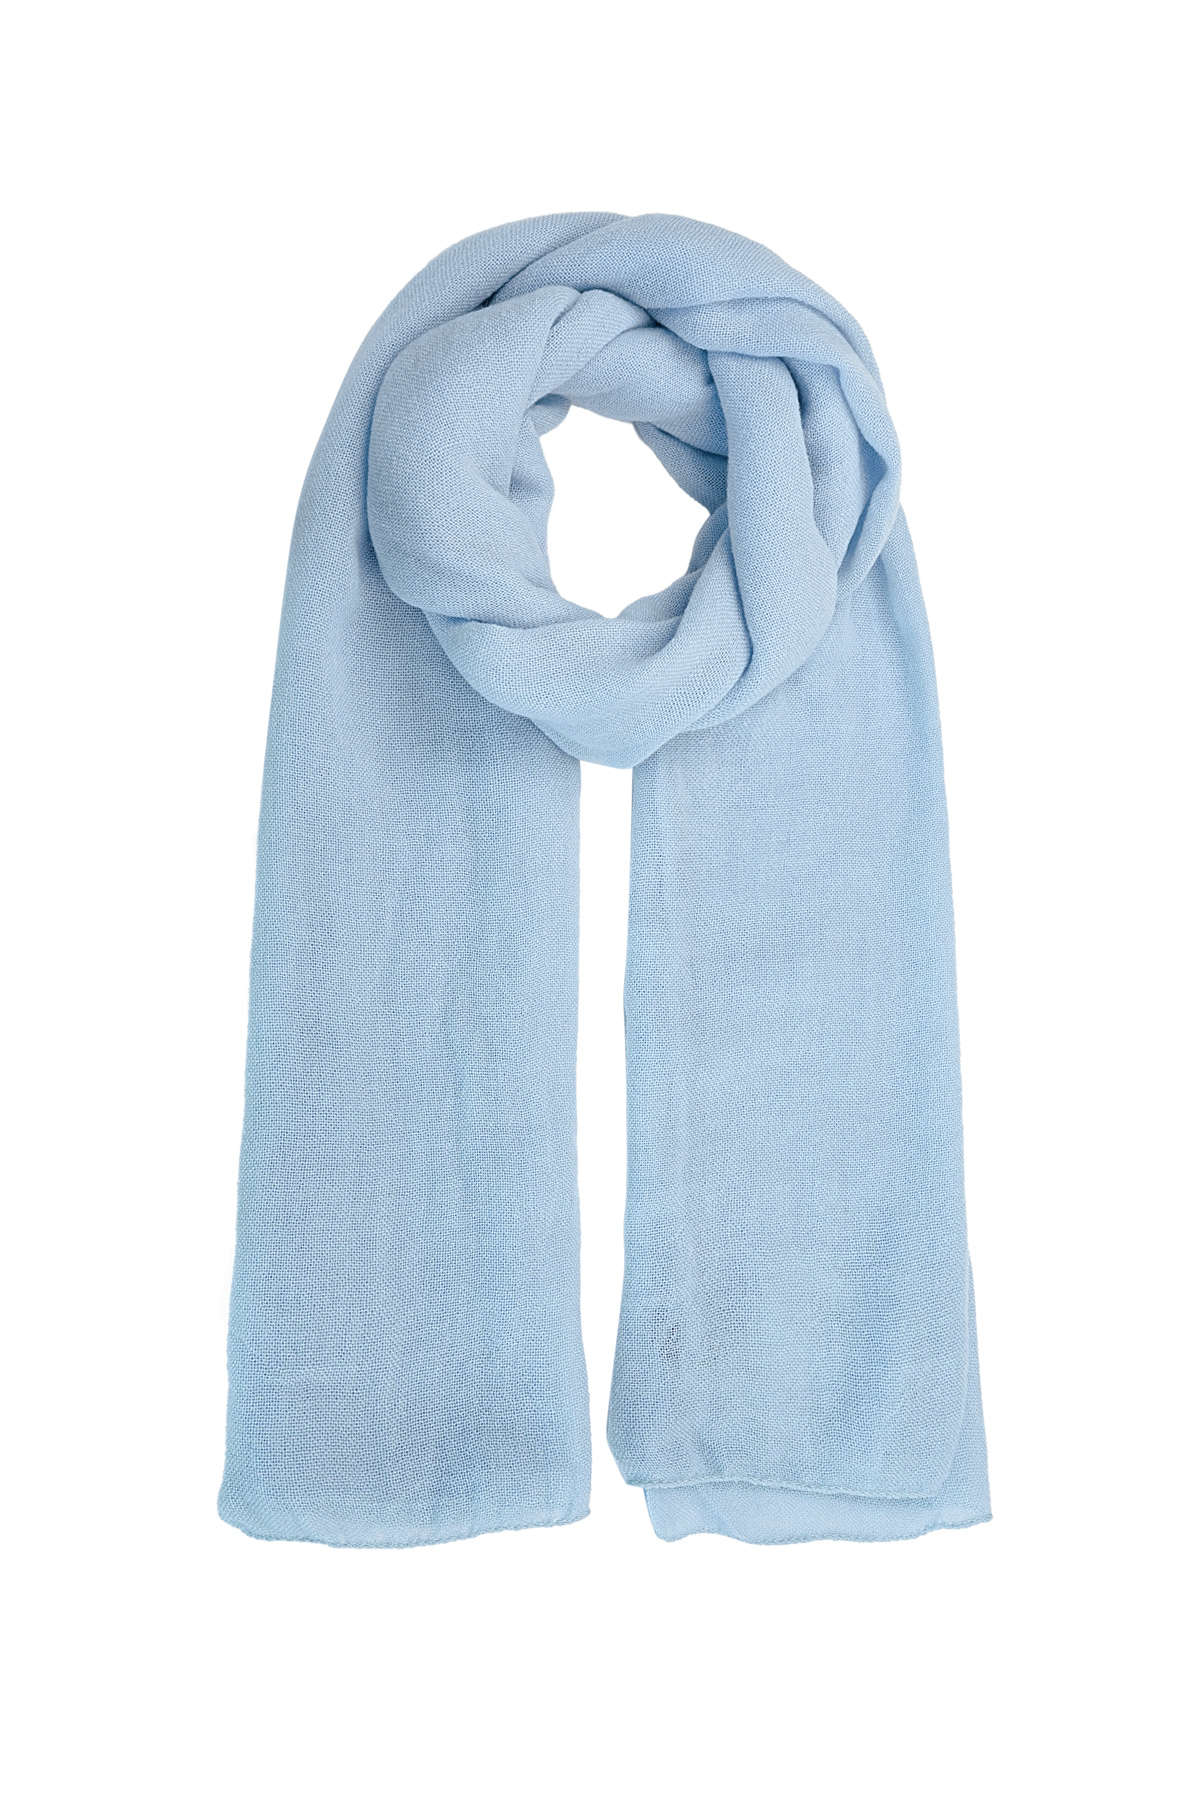 Sjaal effen kleur - lichtblauw 